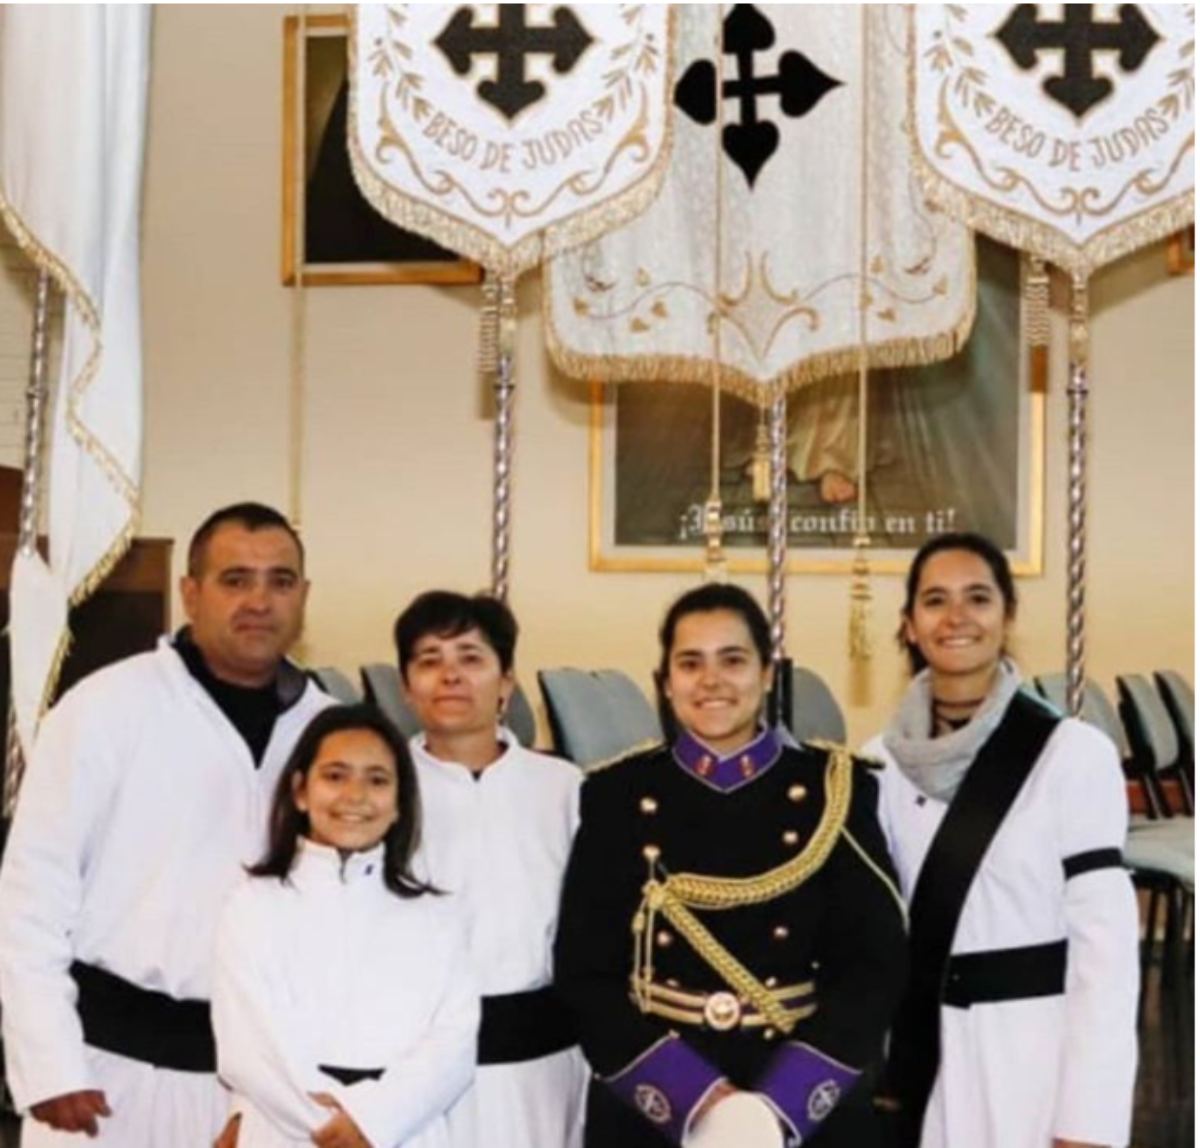 Ángela y su familia, "la Semana Santa me salvó la vida"